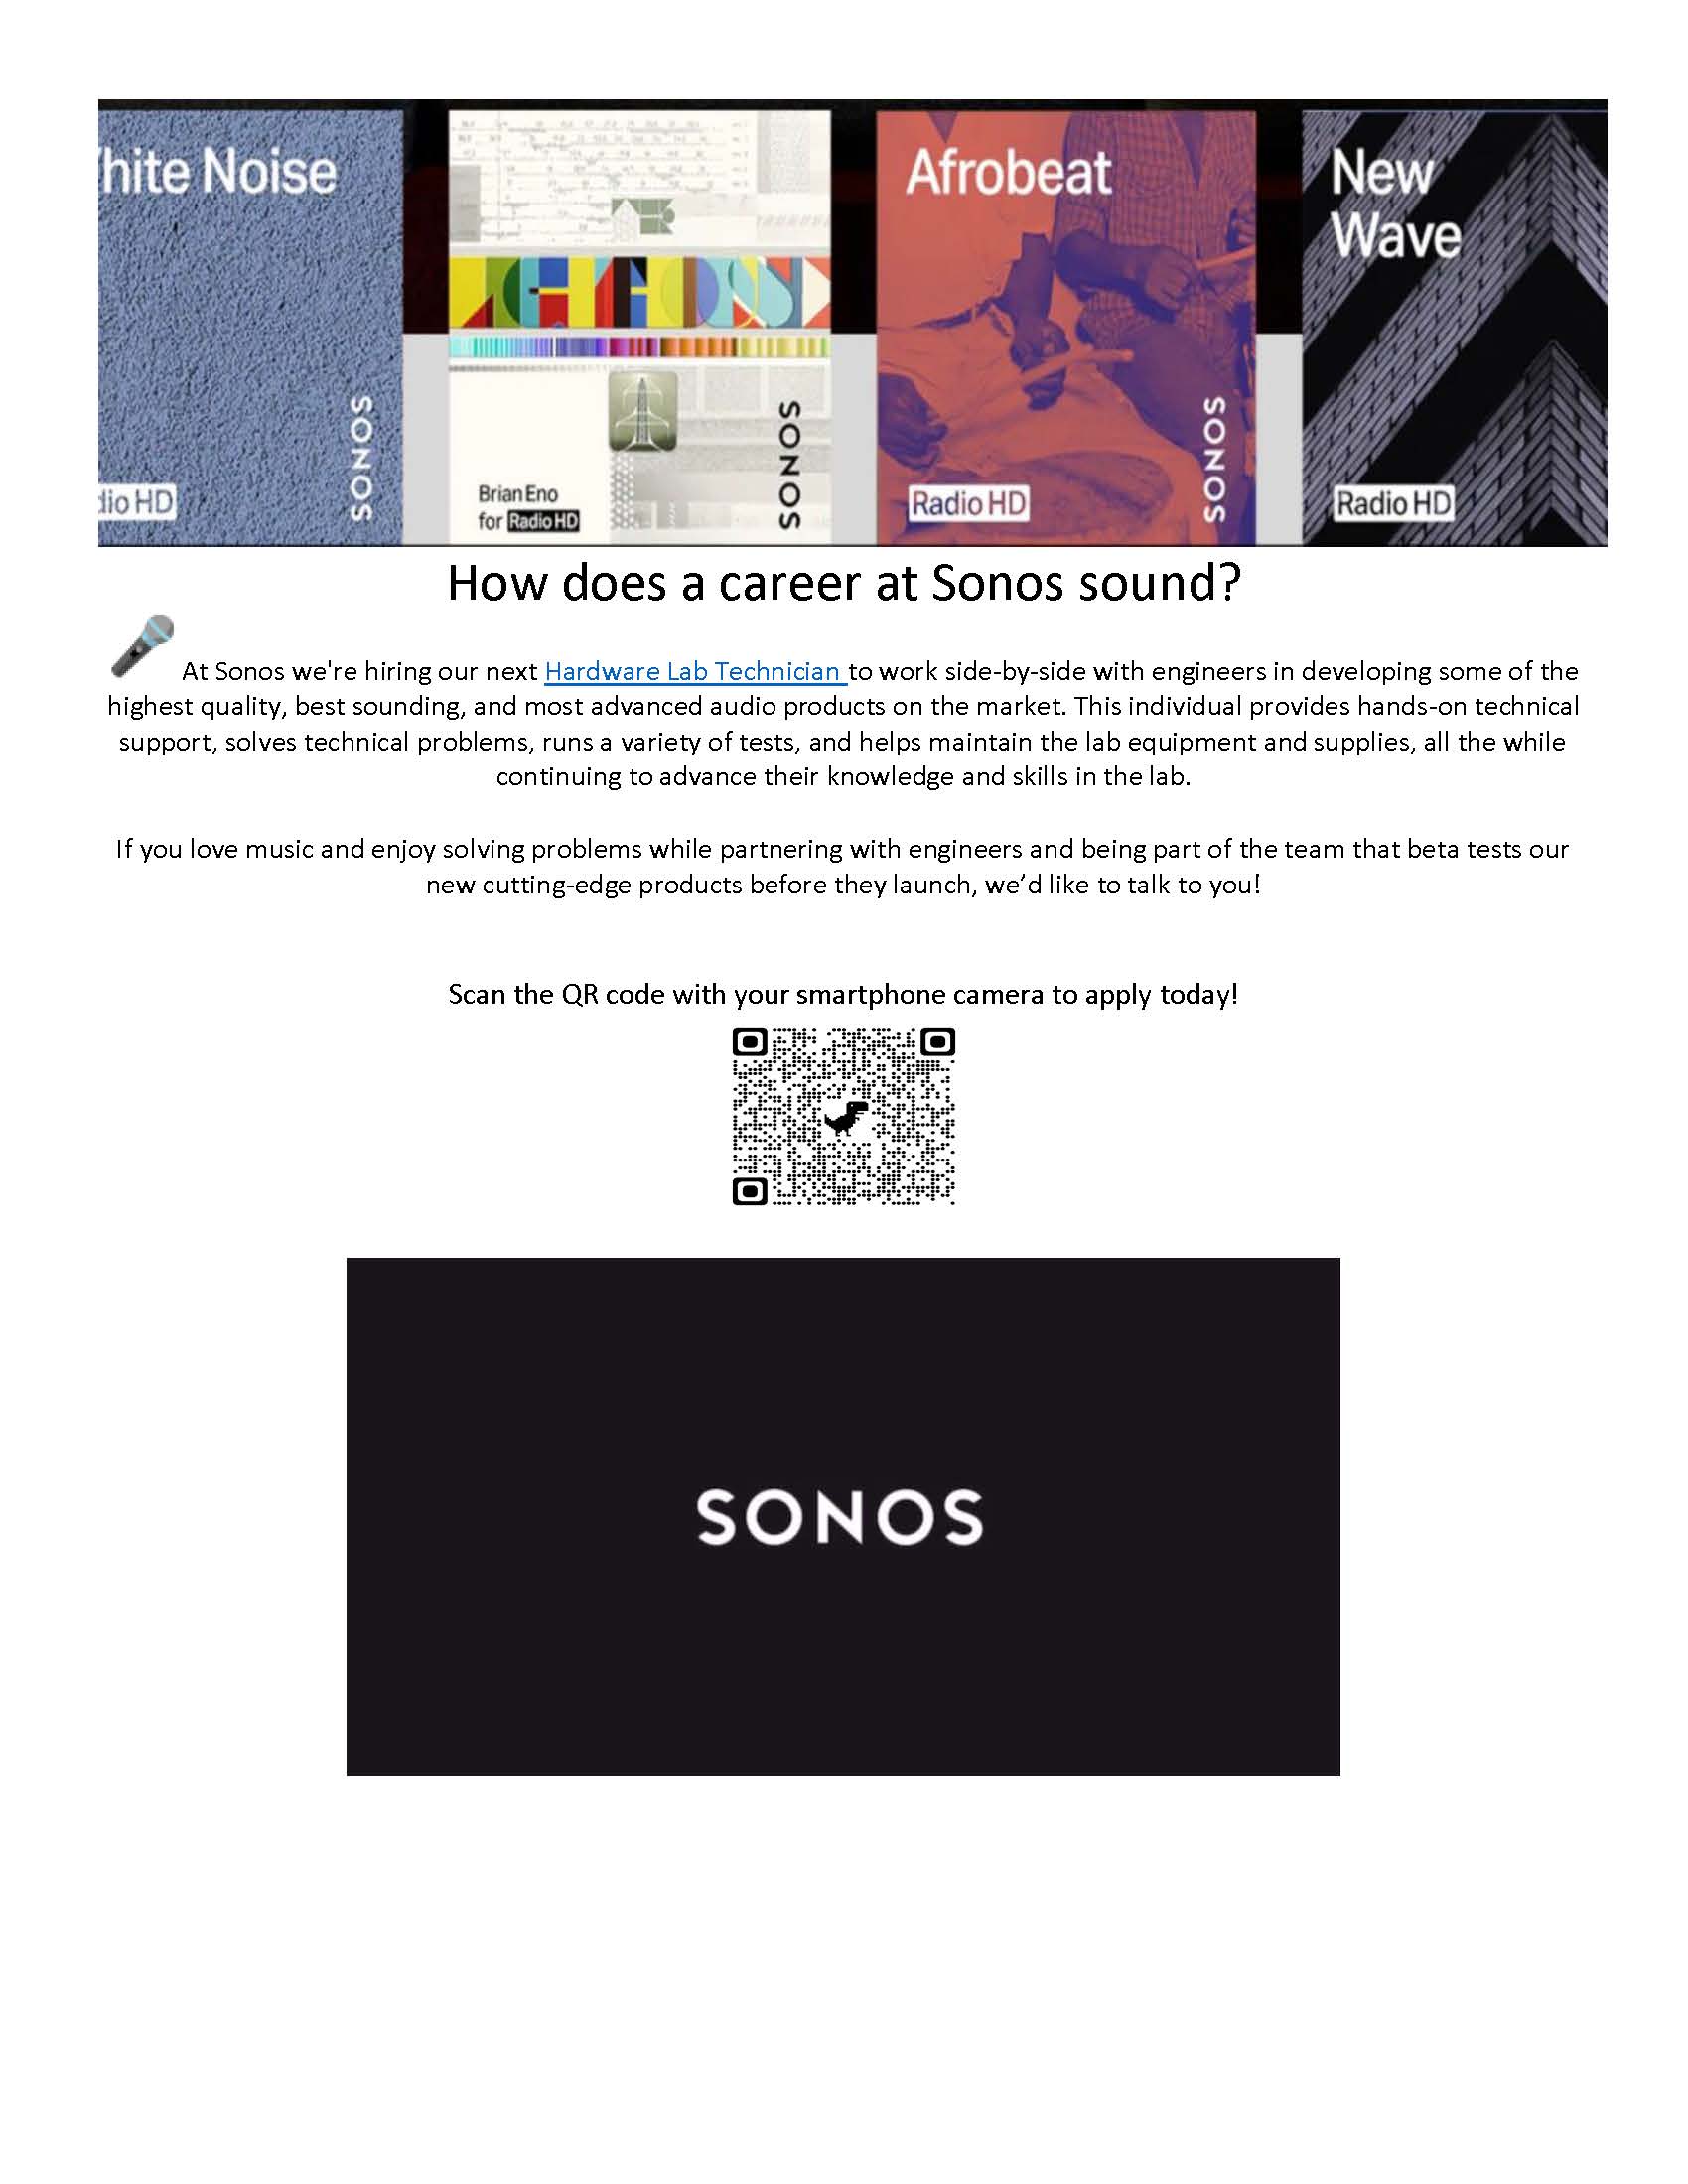 Sonos Jobs